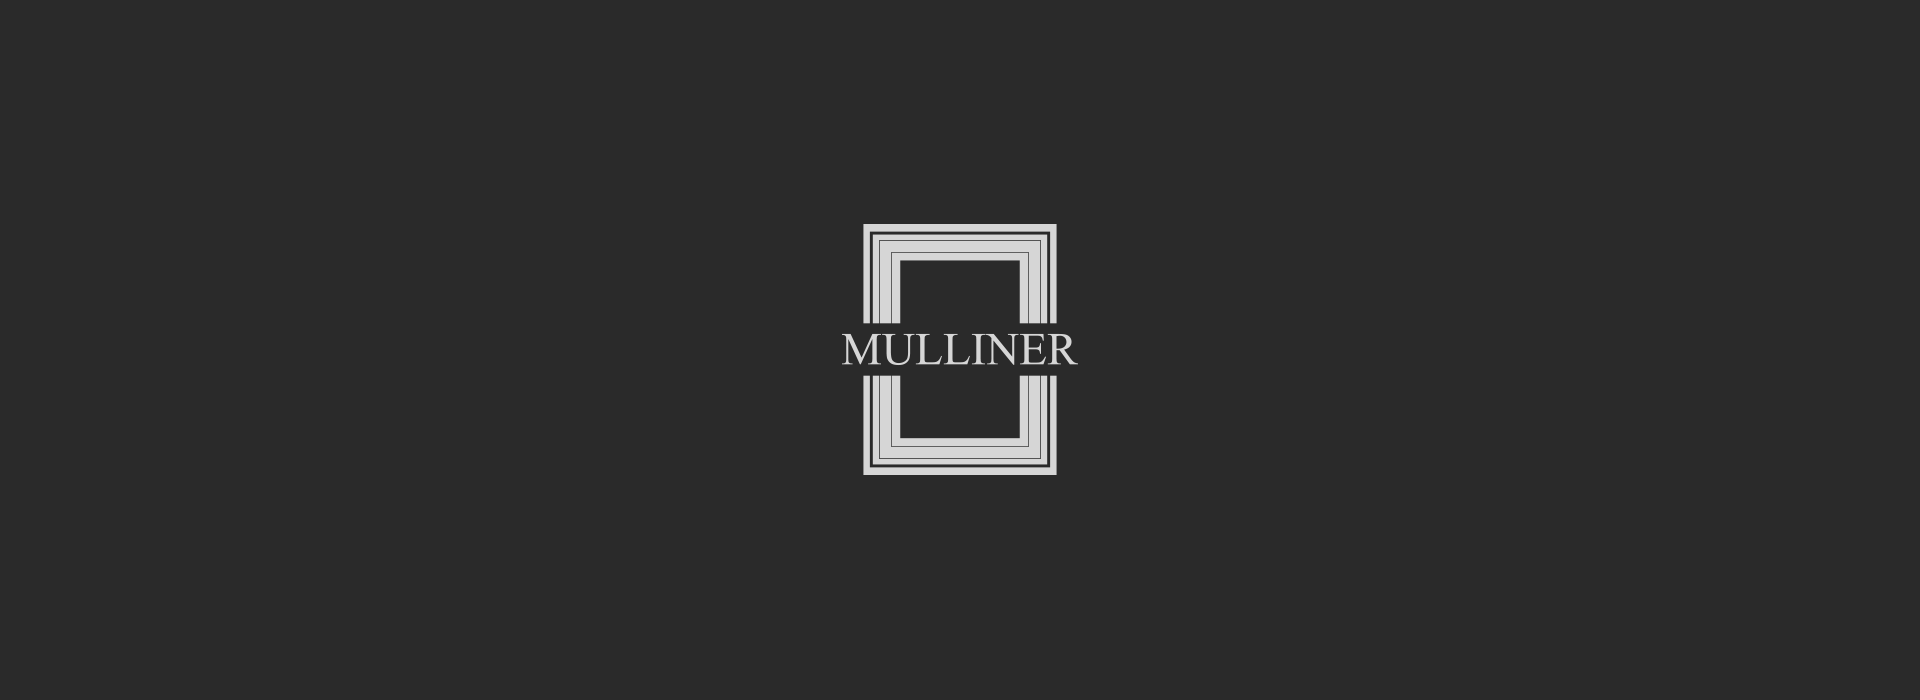 Mulliner